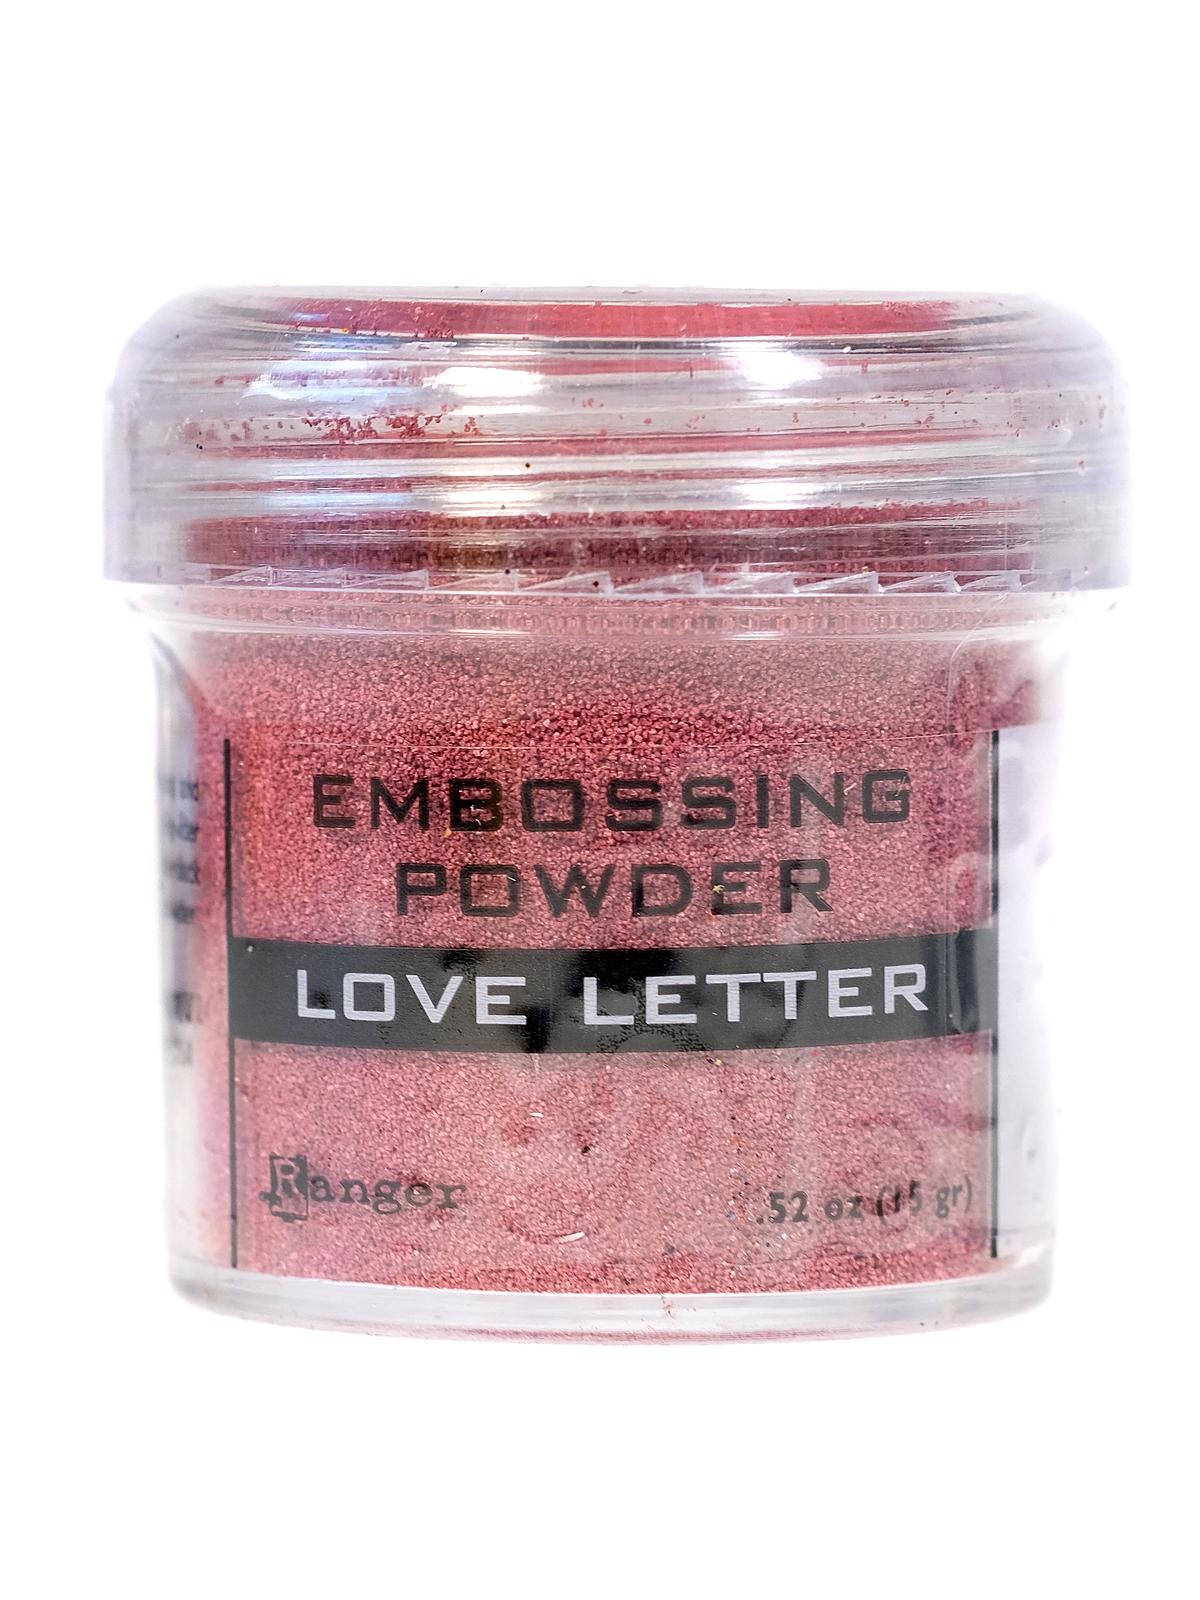 Pink Tinsel Embossing Powder